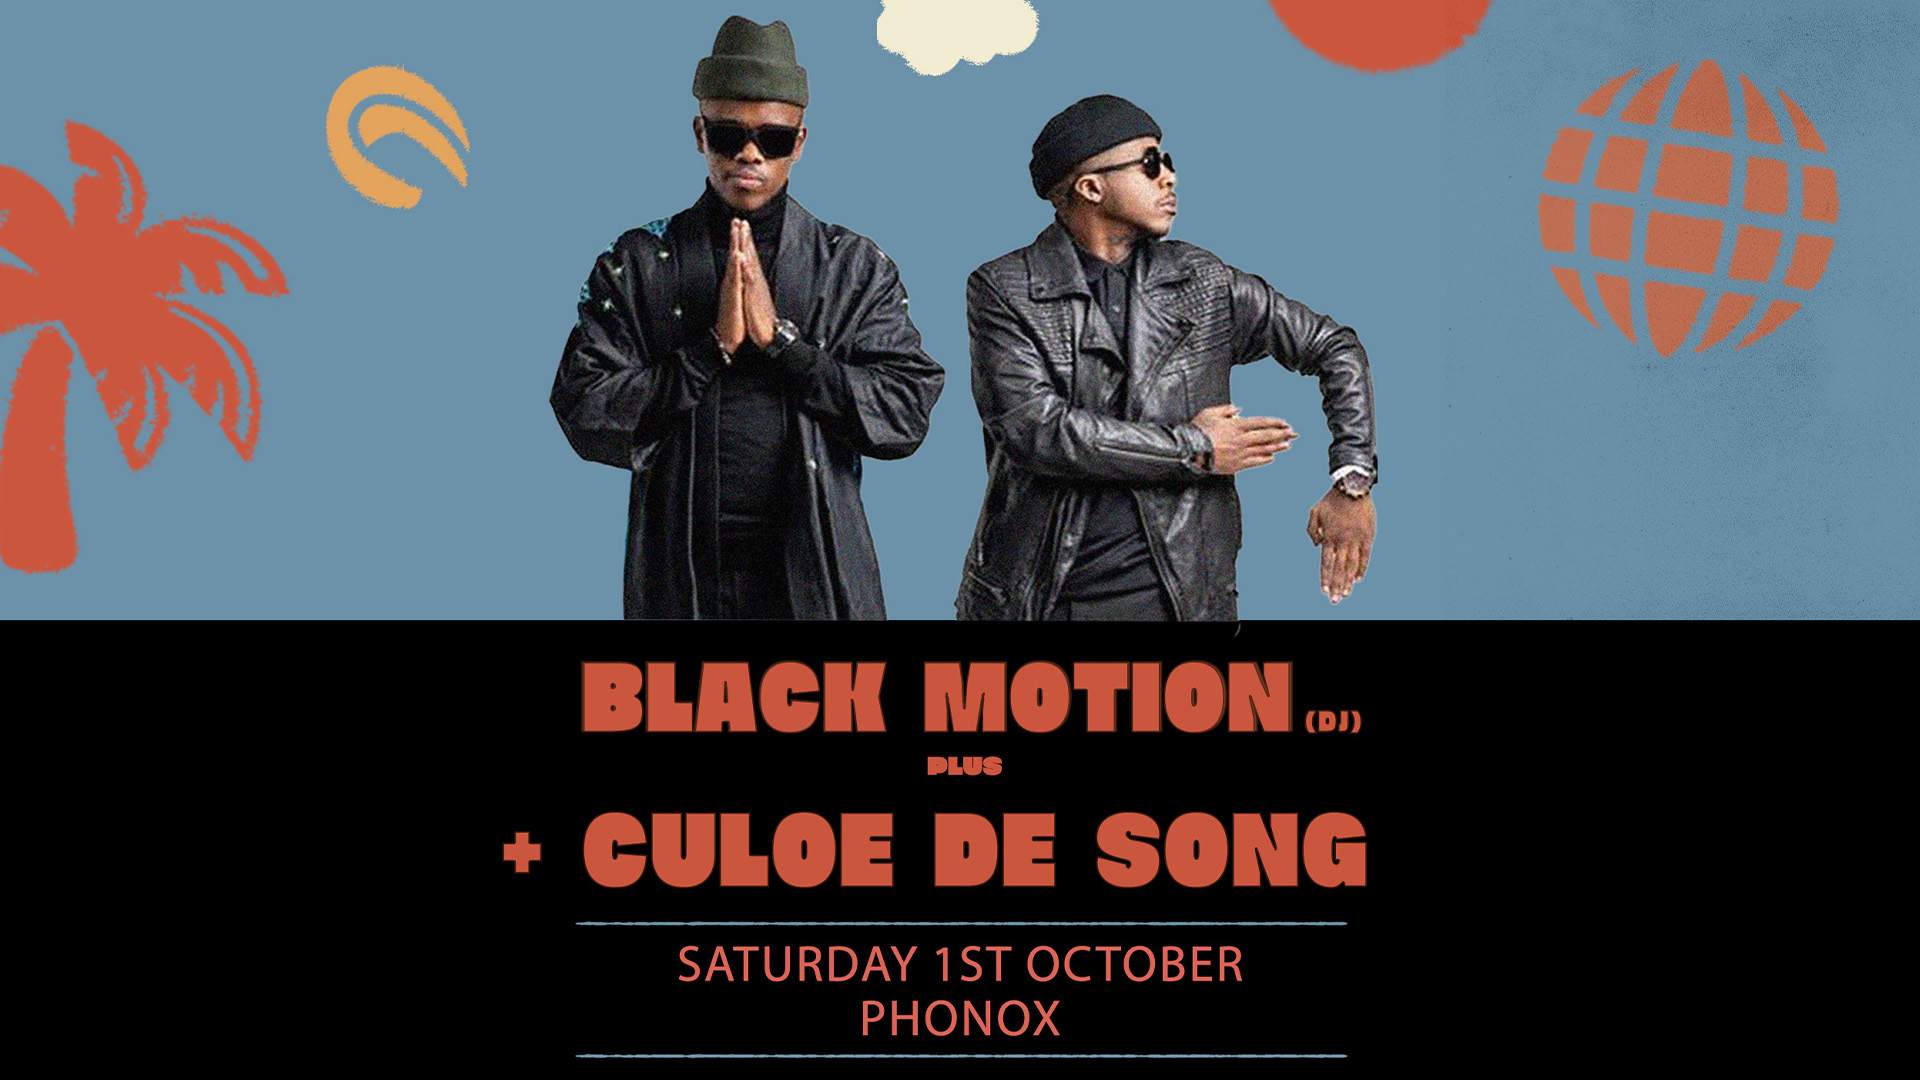 Black Motion (DJ) + Culoe De Song - Página frontal